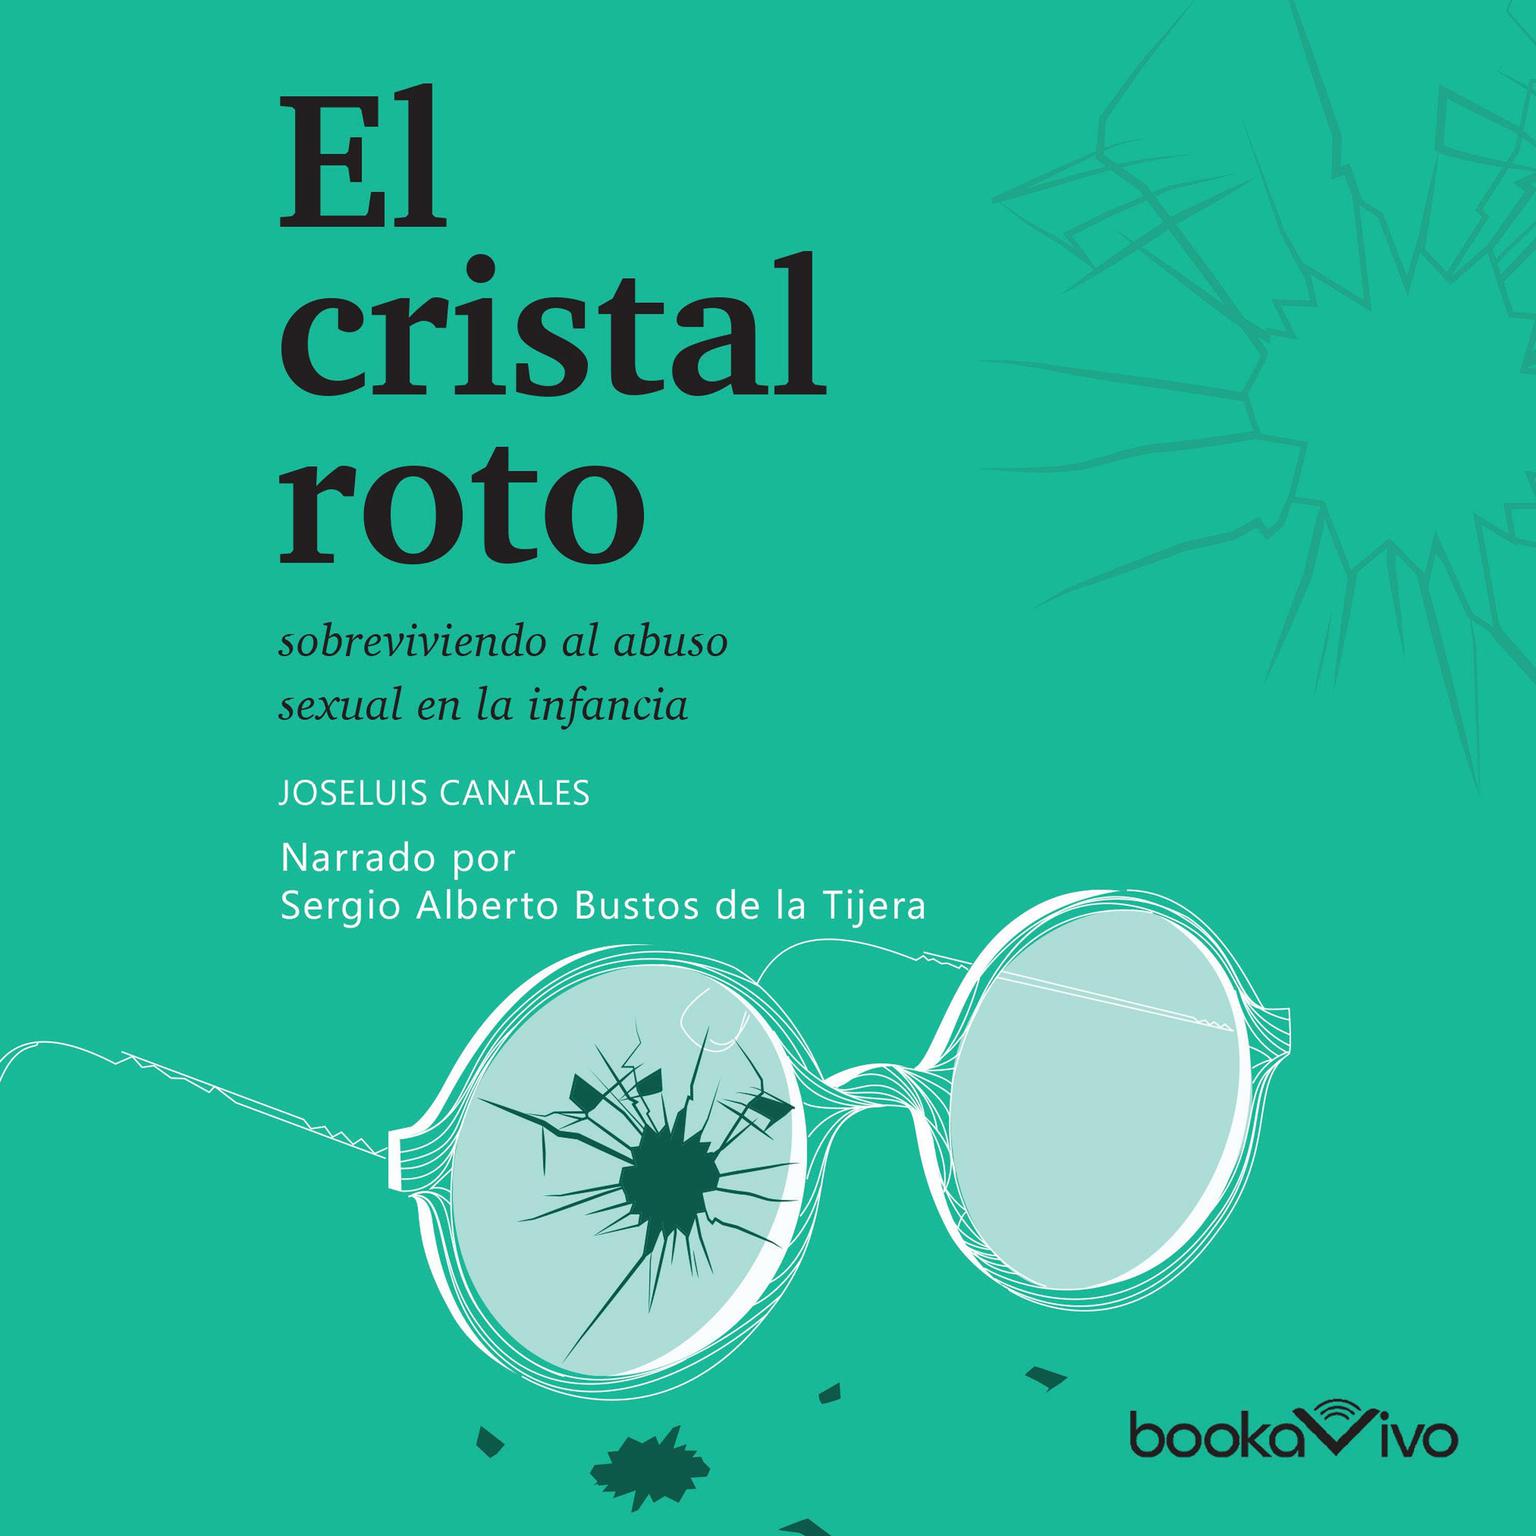 El cristal roto: Sobreviviendo el abuso sexual en la infancia (Surviving sexual abuse during infancy) Audiobook, by Joseluis Canales